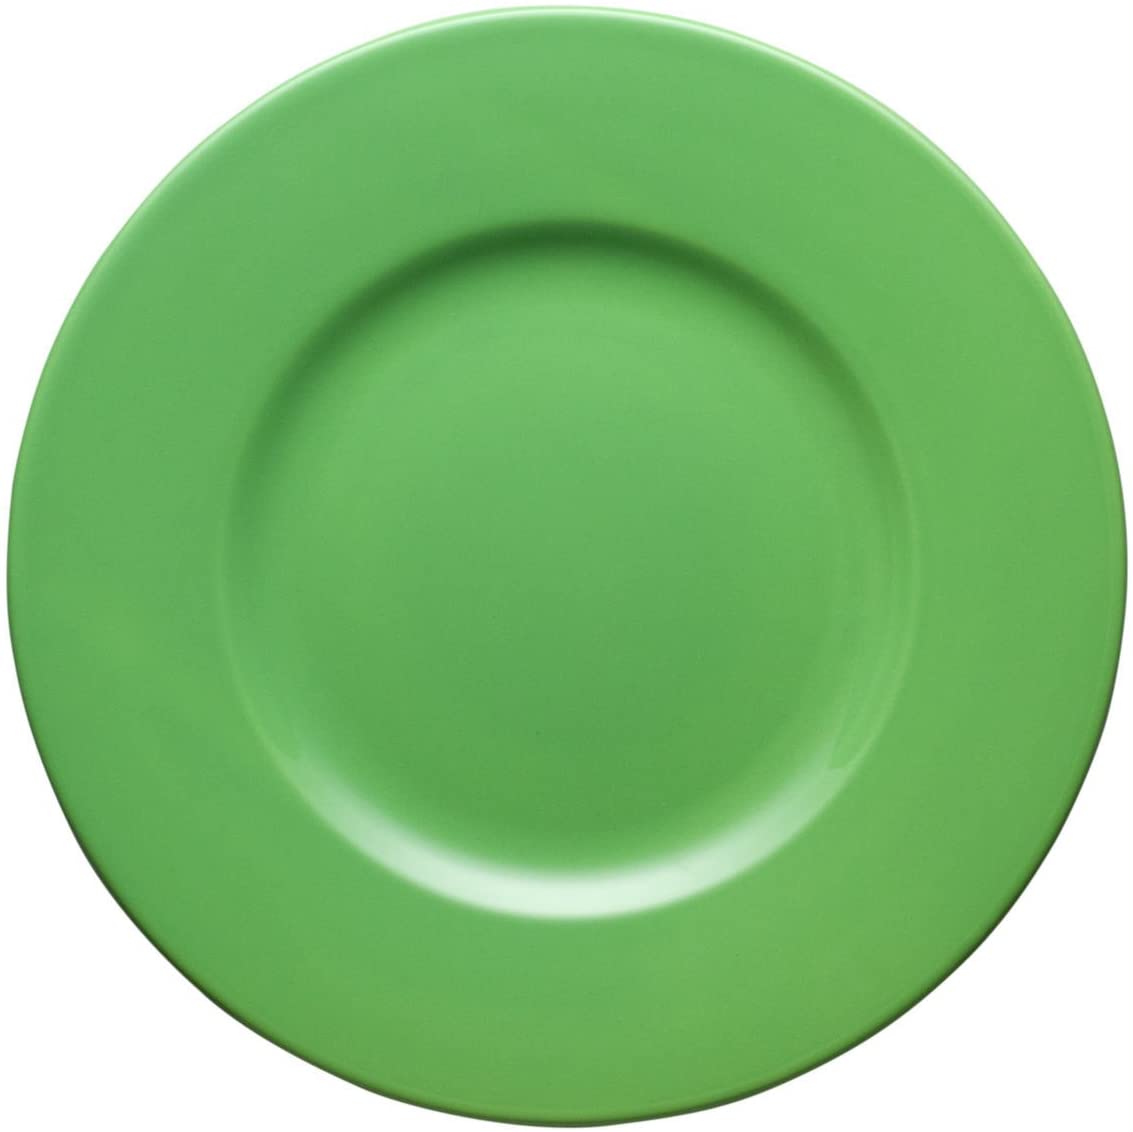 Waechtersbach Rimmed Charger Plate, Set of 2, Green Apple